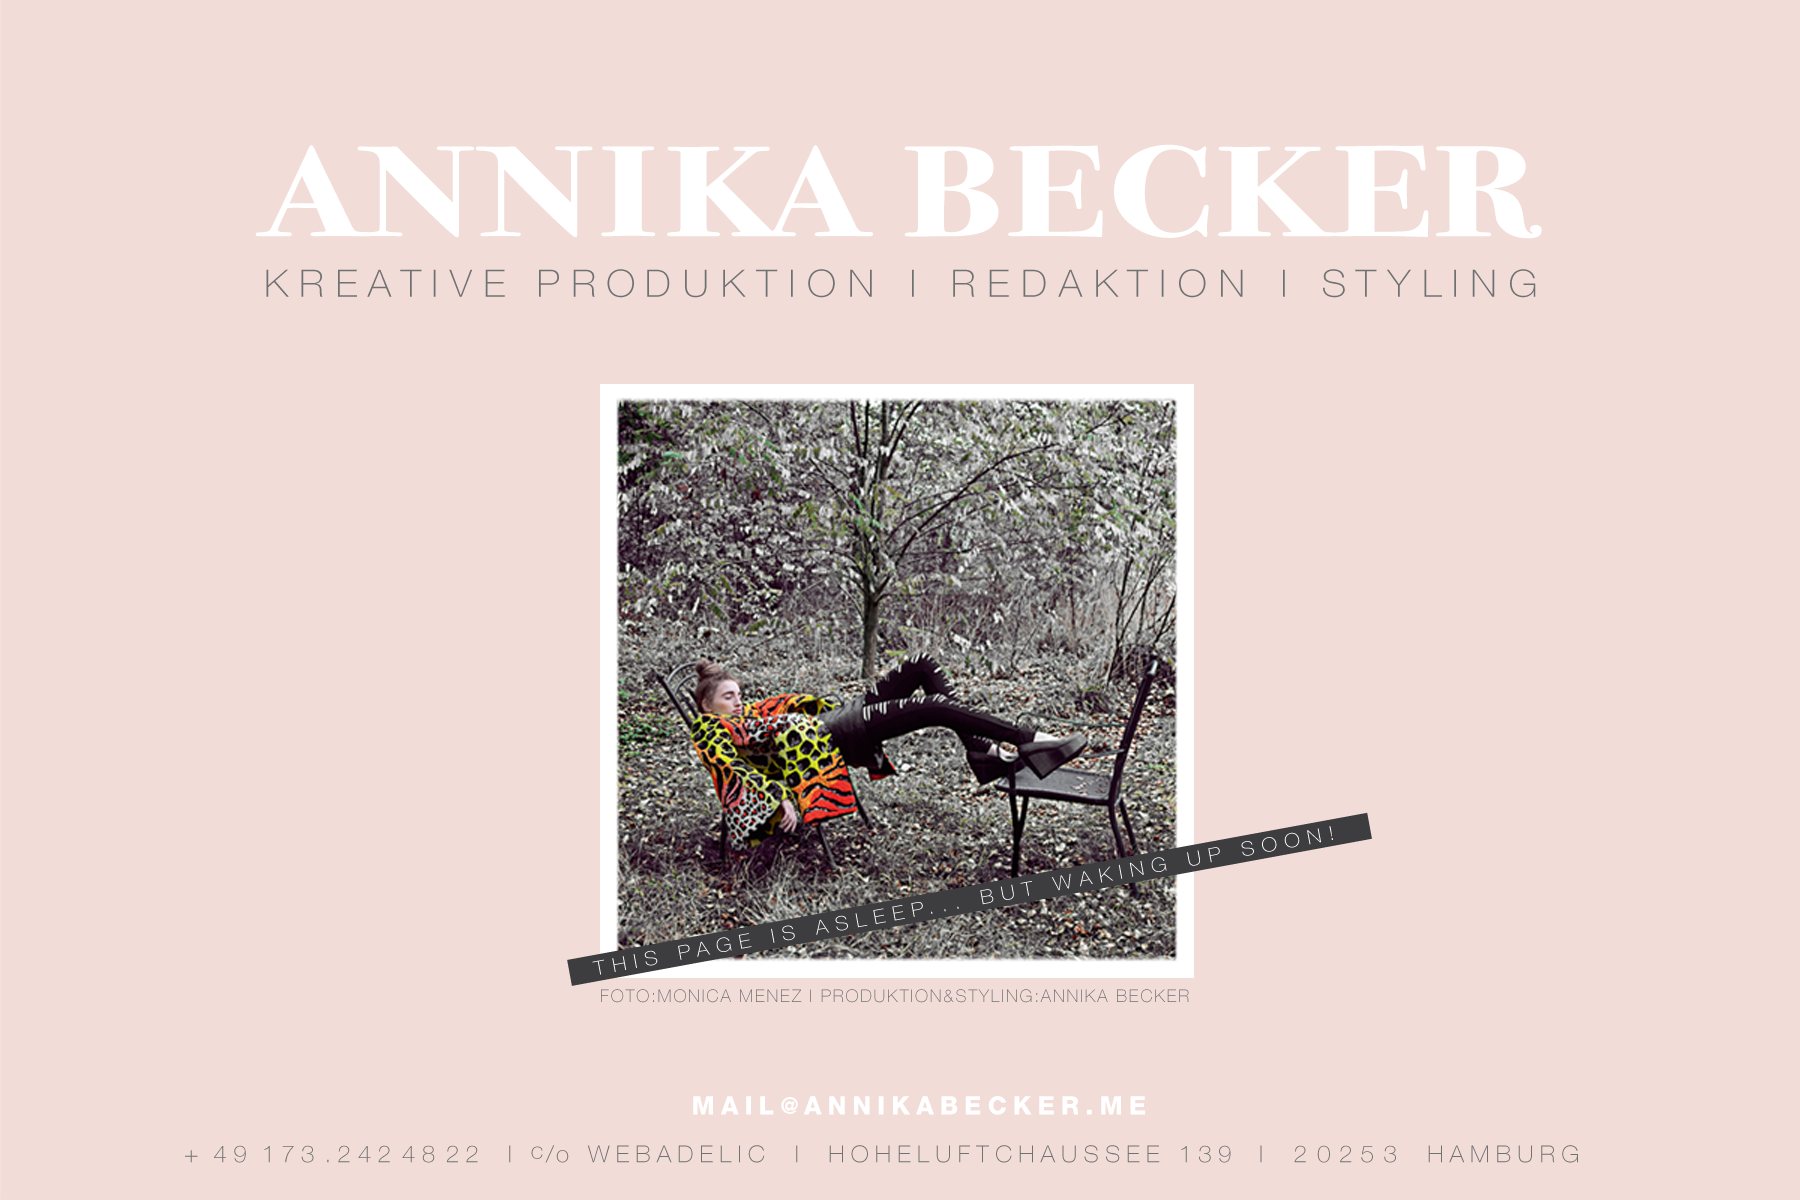 teaser_annika_becker